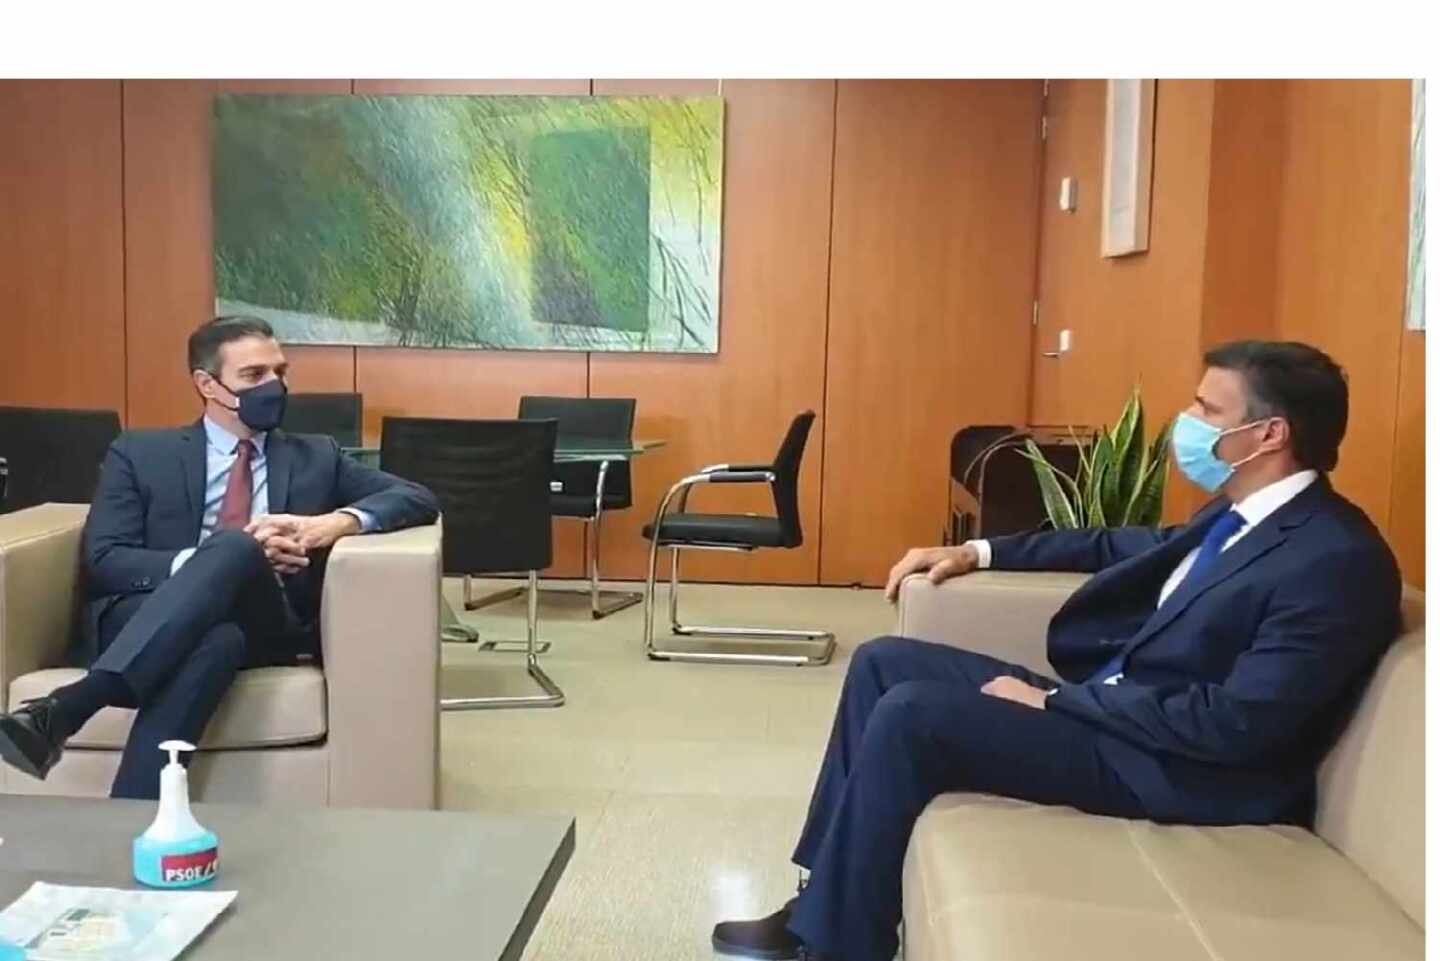 Pedro Sánchez recibe a Leopoldo López en Ferraz: "El pueblo venezolano debe sufrir lo mínimo"